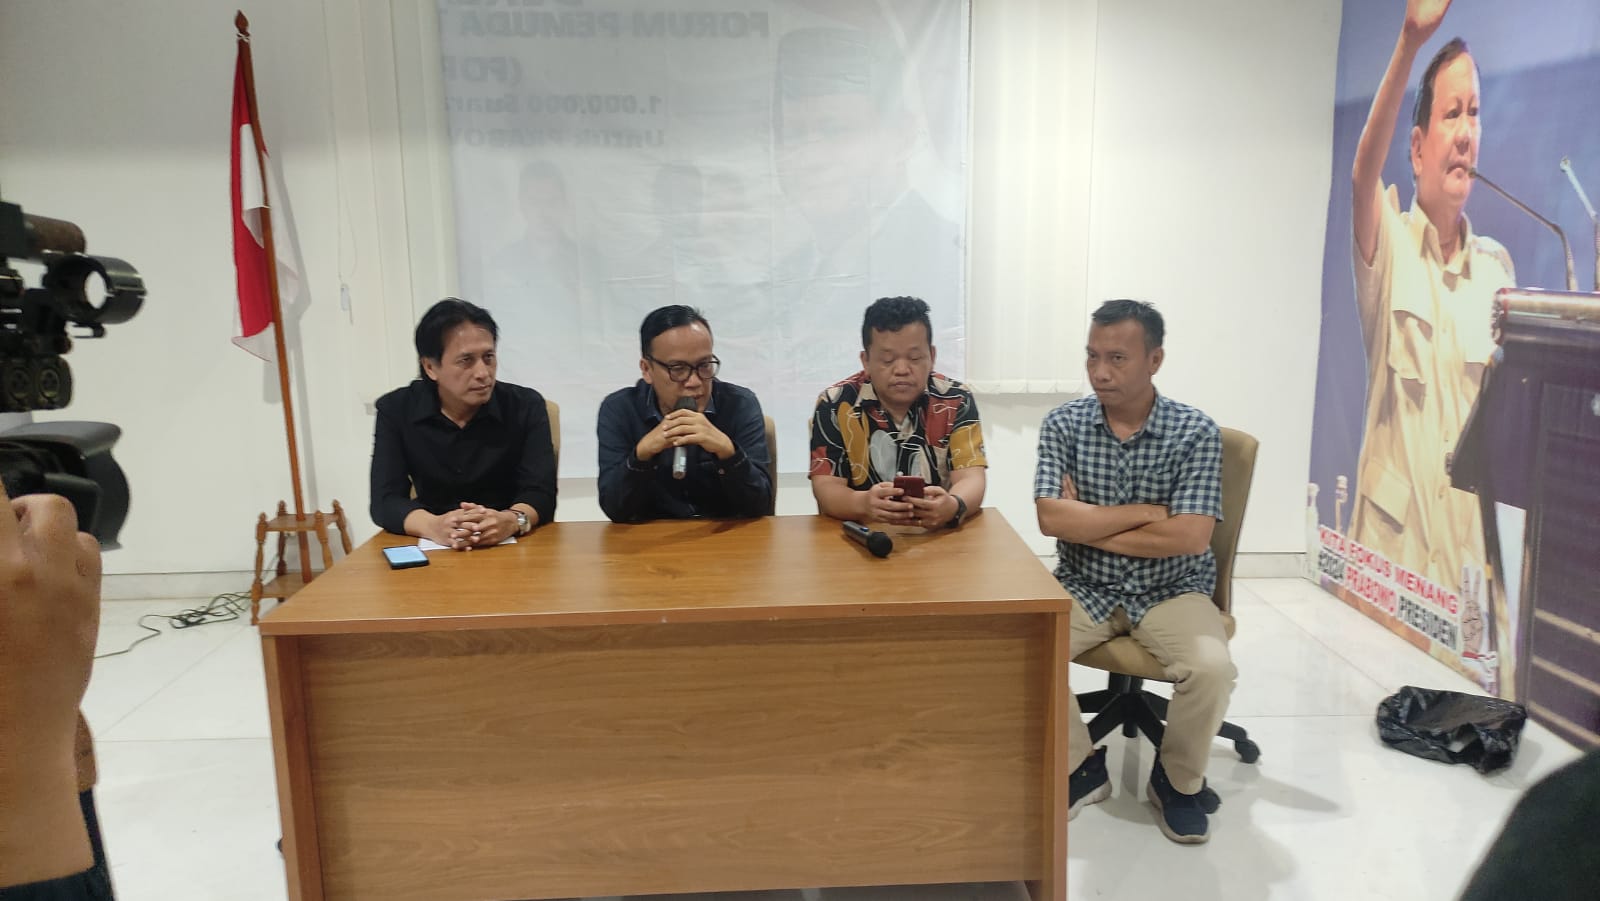 Relawan Prabowo Minta Ganjar Pranowo Bertanggungjawab Atas Informasi Bohong yang Dilakukan Relawannya